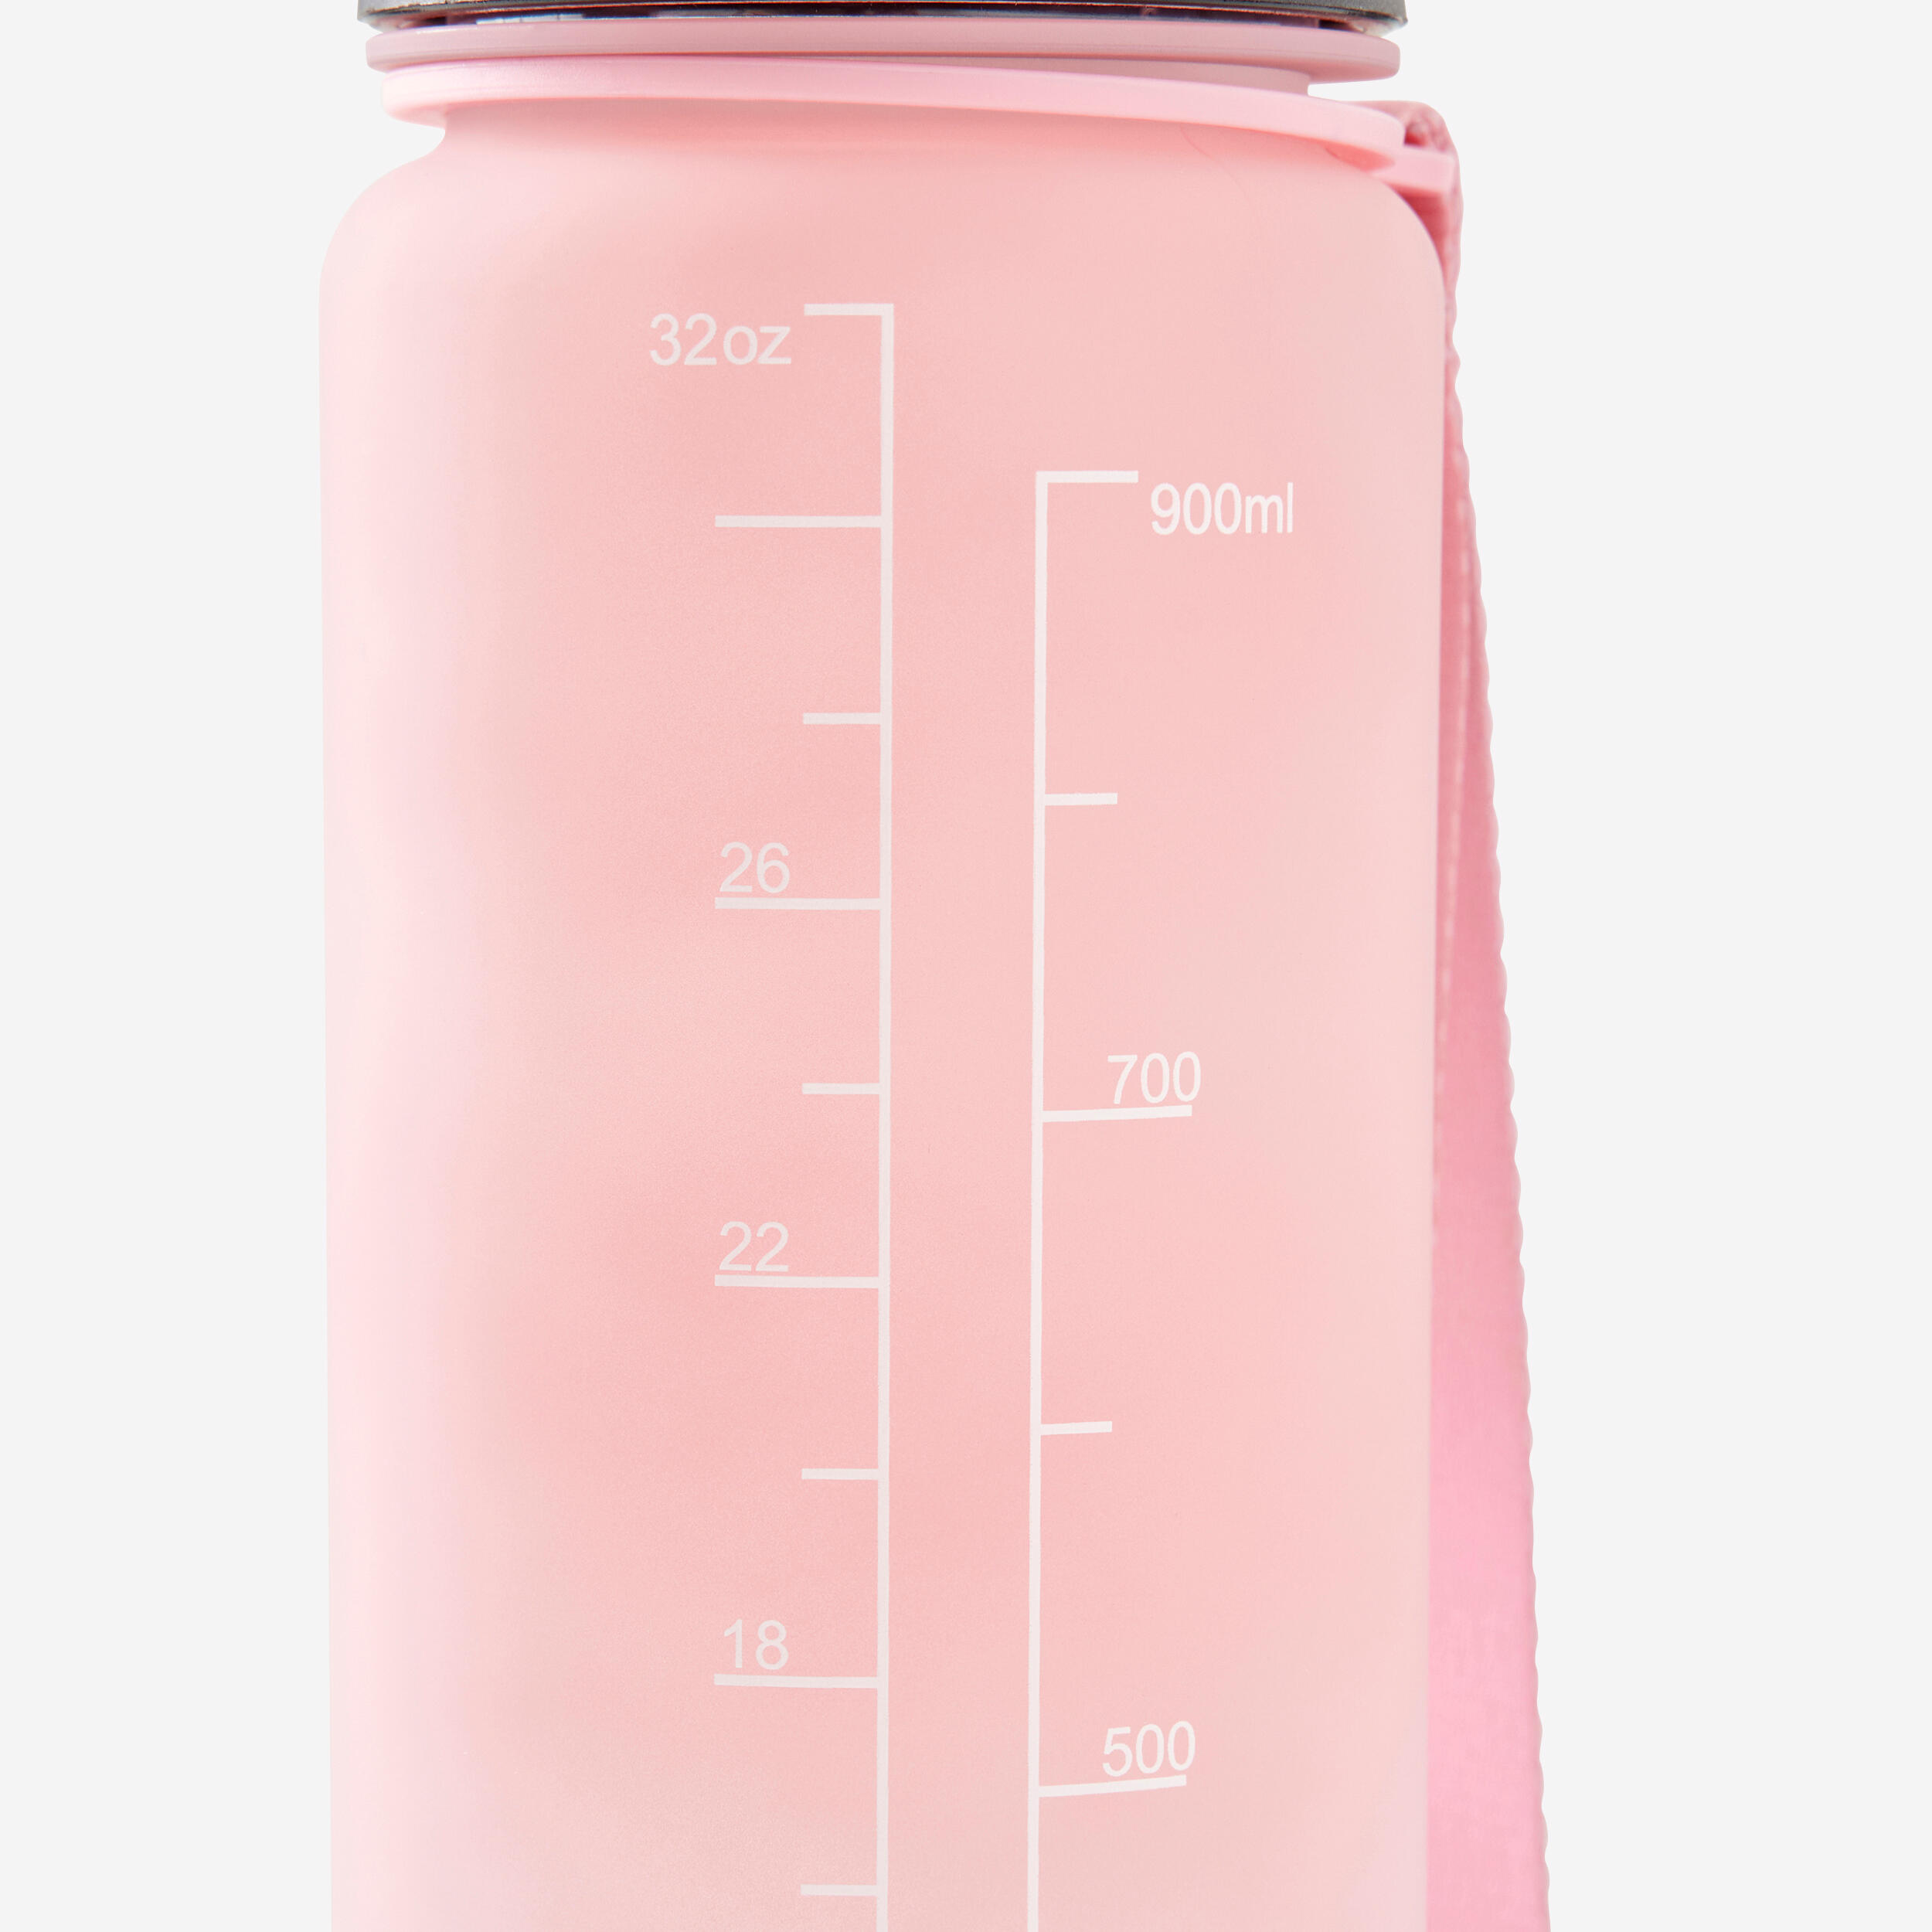 1 Litre Fitness Bottle Motivation - Pink/White 6/6